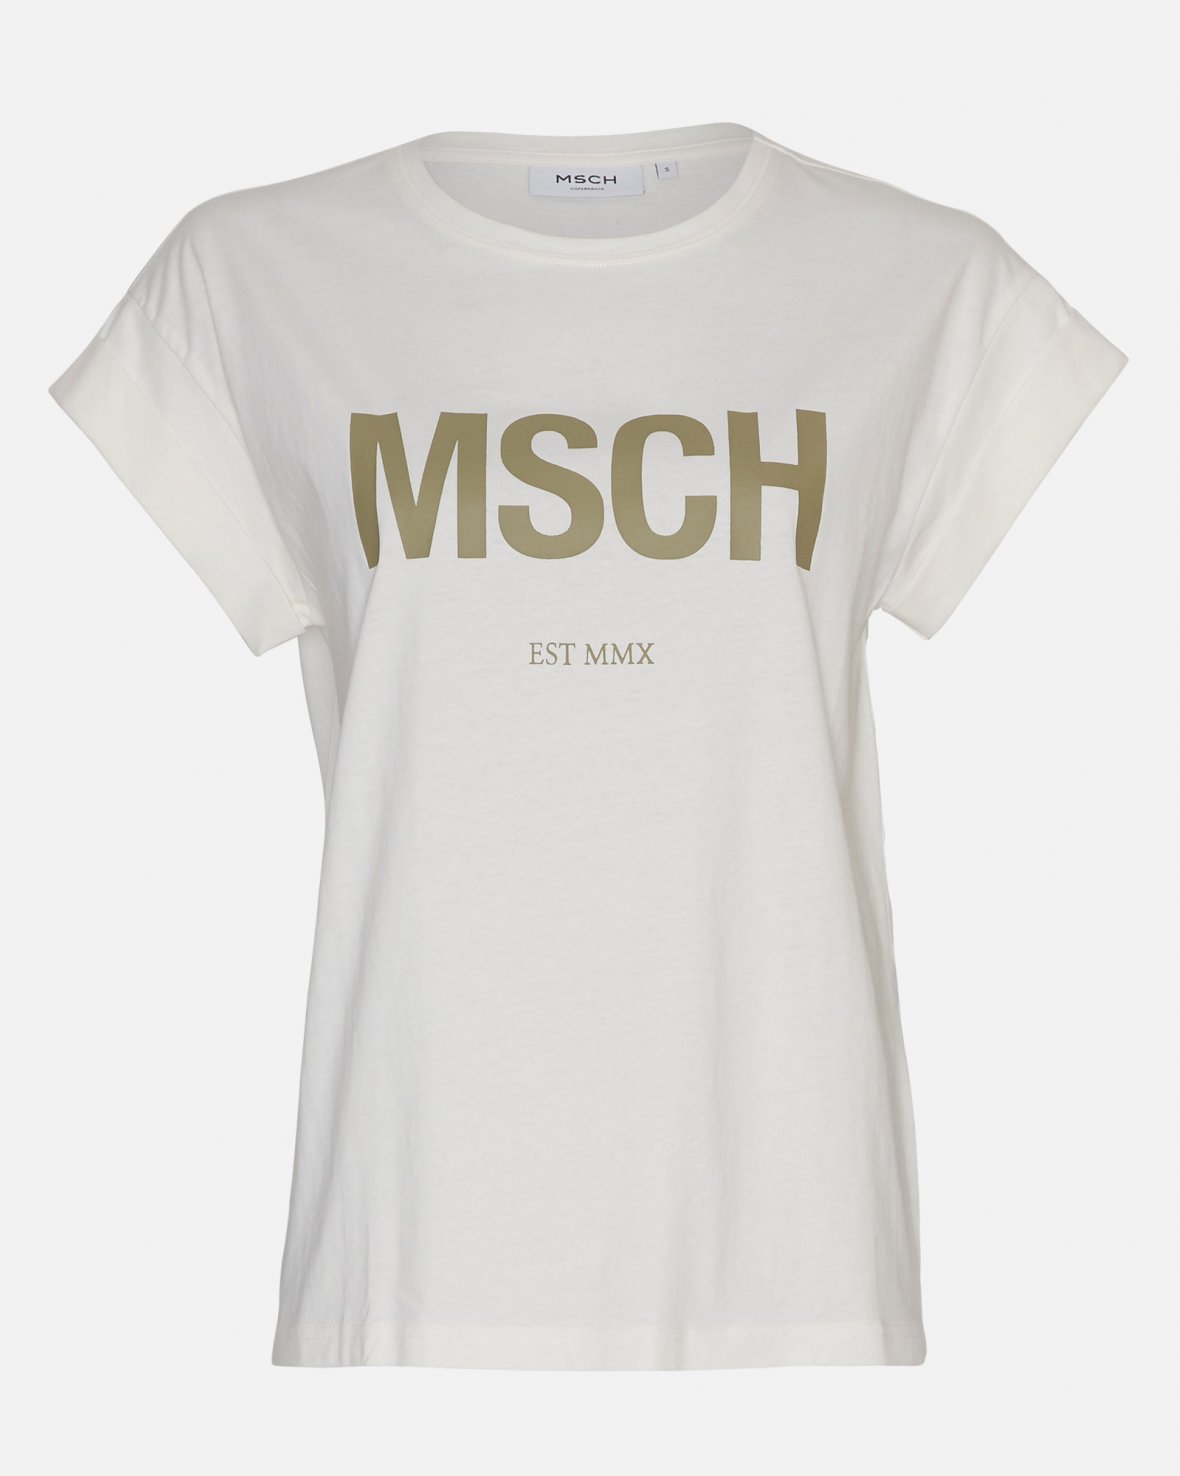 moss-copenhagen-mschalva-organic-msch-std-tee_1180x1476c